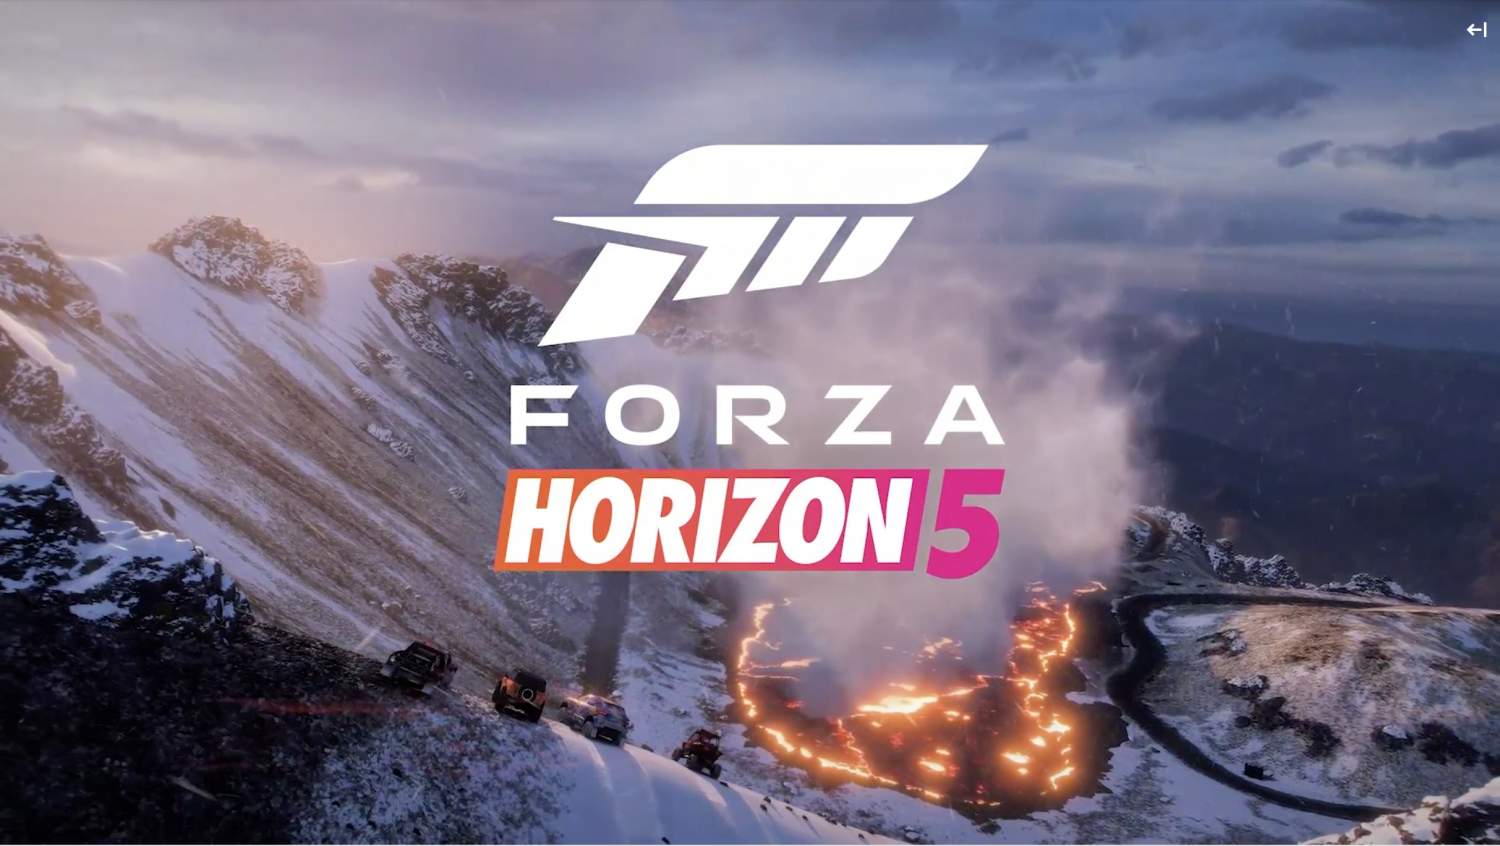 Forza Horizon 5 takes us to Mexico later this year - SlashGear